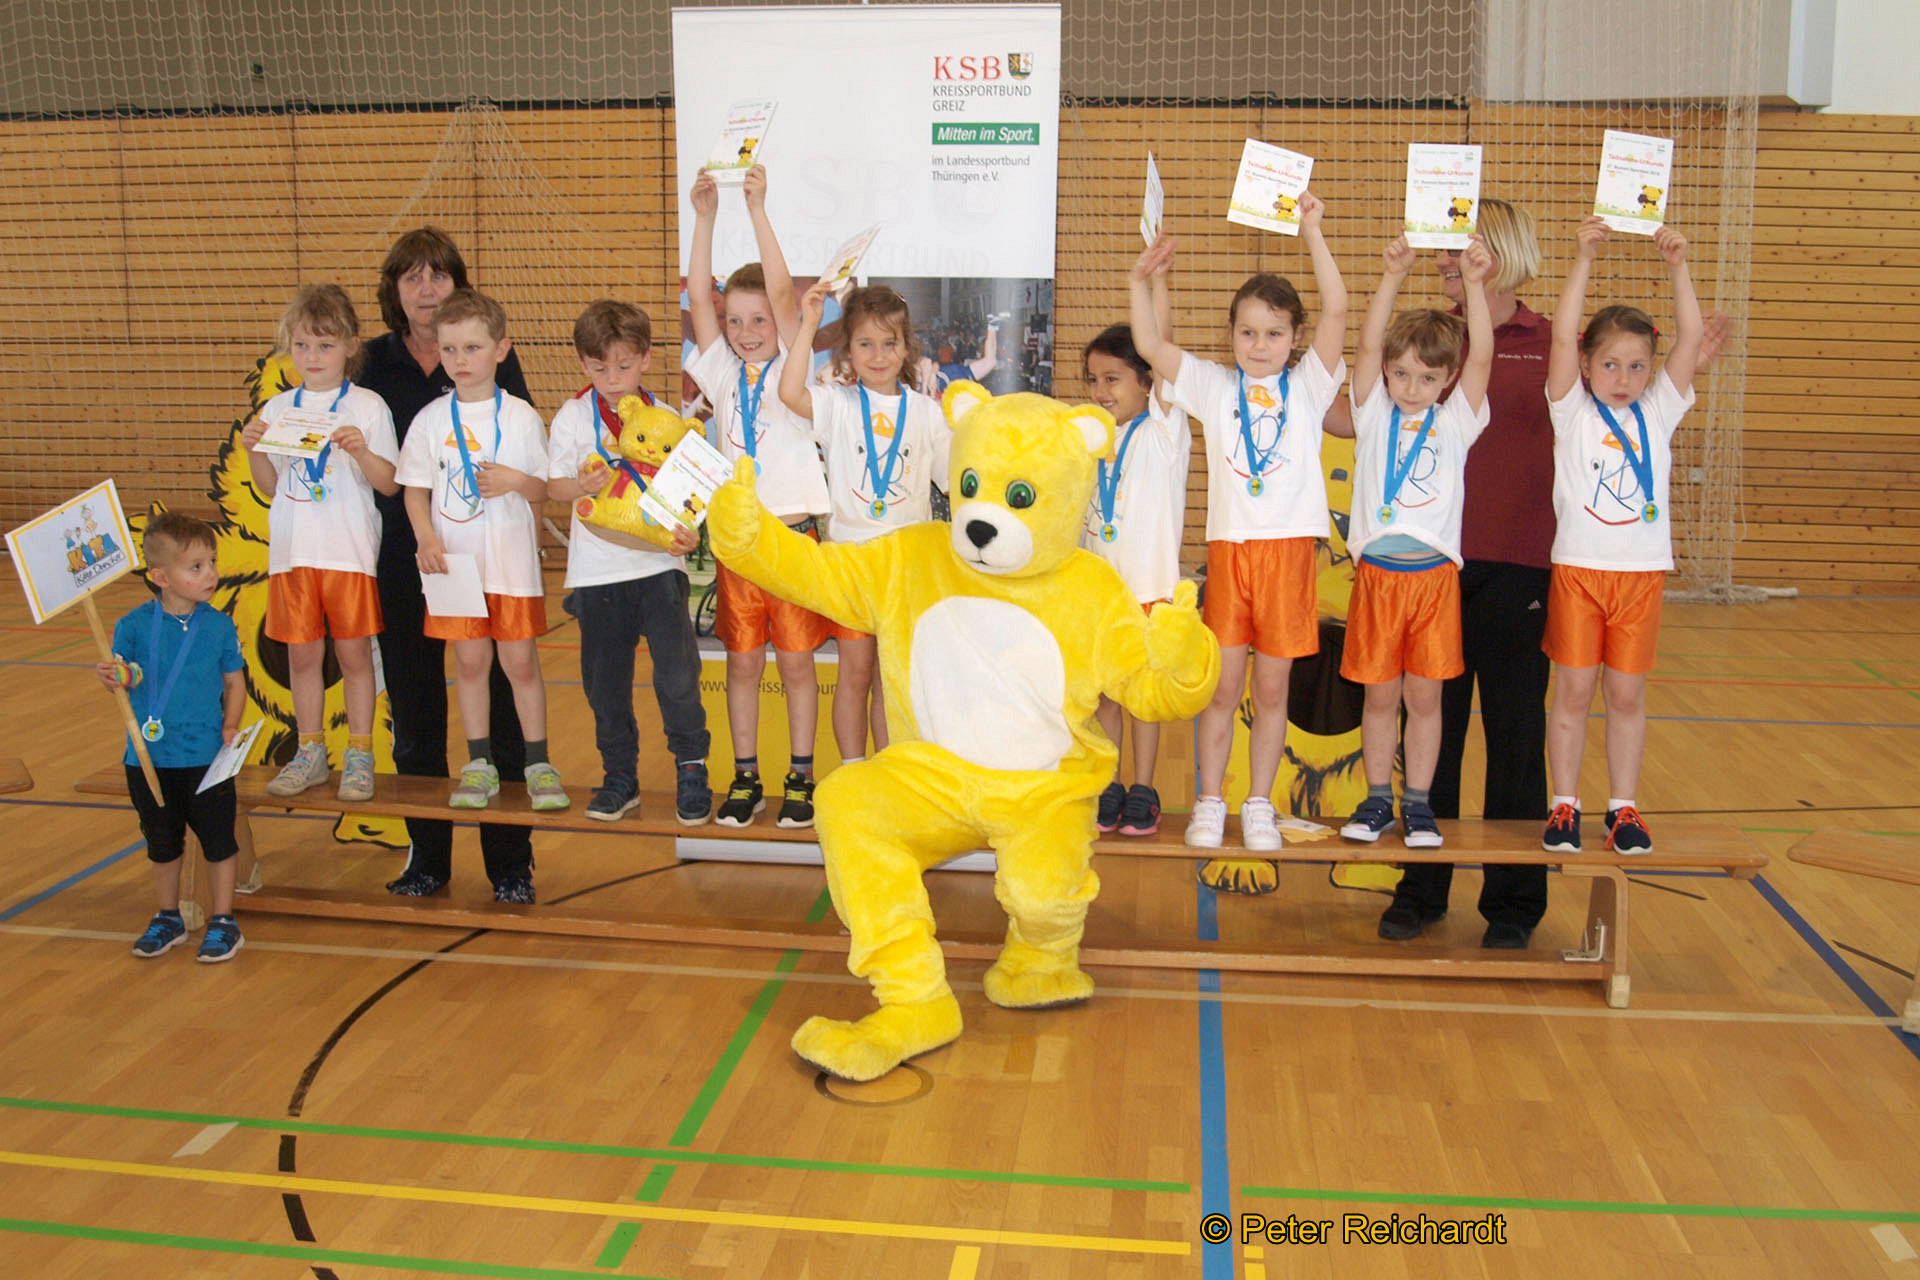 Die Siegermannschaft 2019, die Aktiven der Kindertagesstätte "Käte Dunker" Greitz, mit dem Bummi-Wanderpokal.